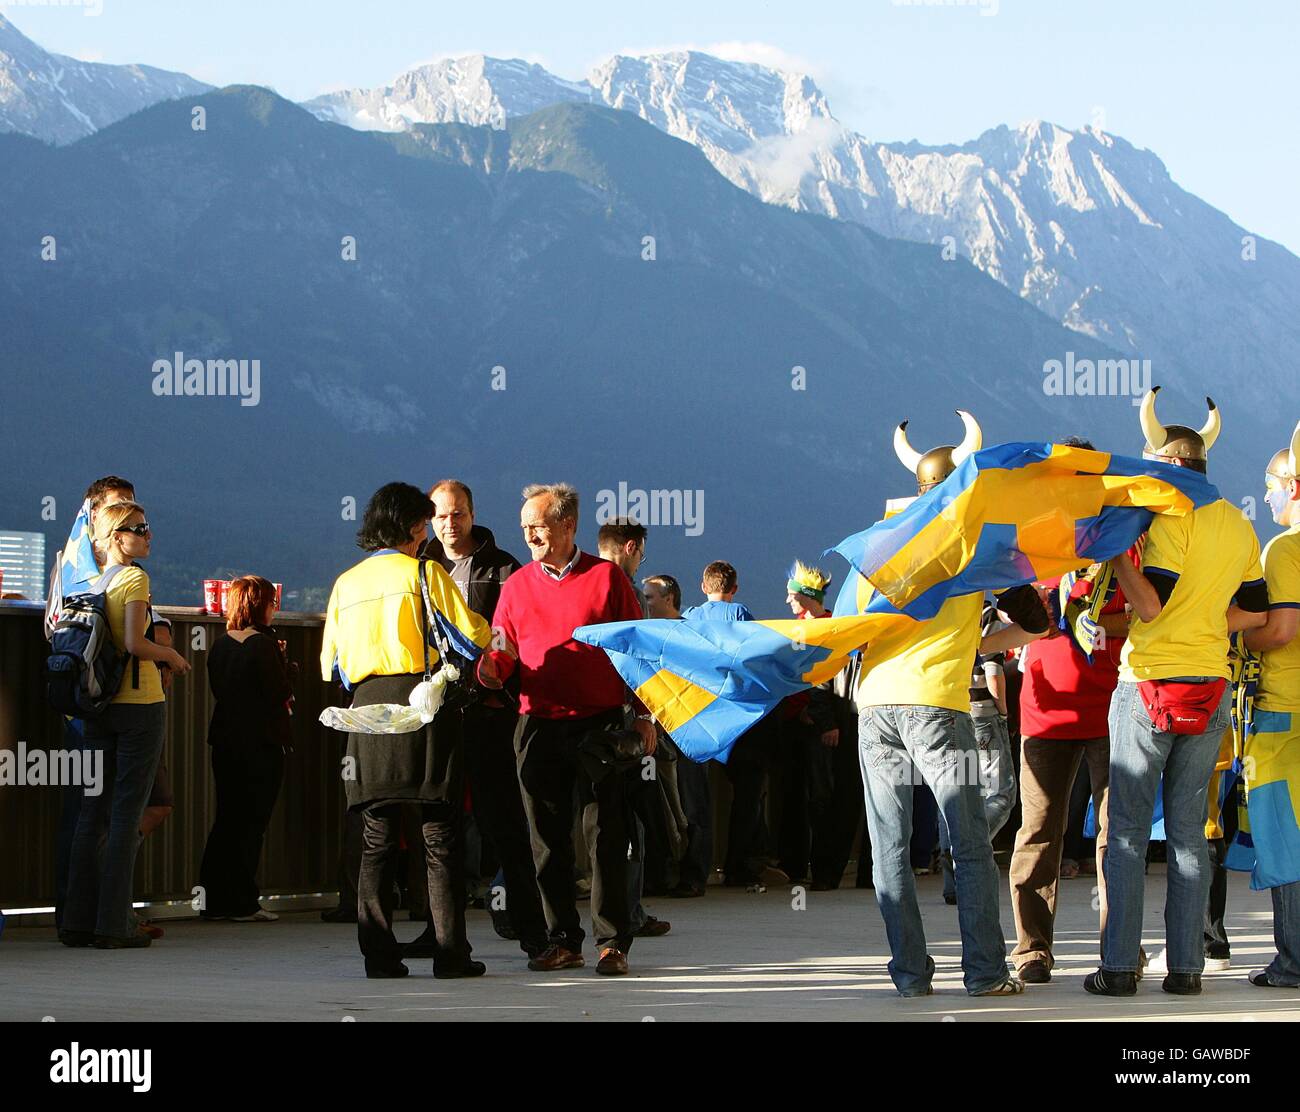 Gli appassionati svedesi di fronte allo sfondo delle montagne del Tirolo, fuori dallo stadio prima del calcio d'inizio. Foto Stock